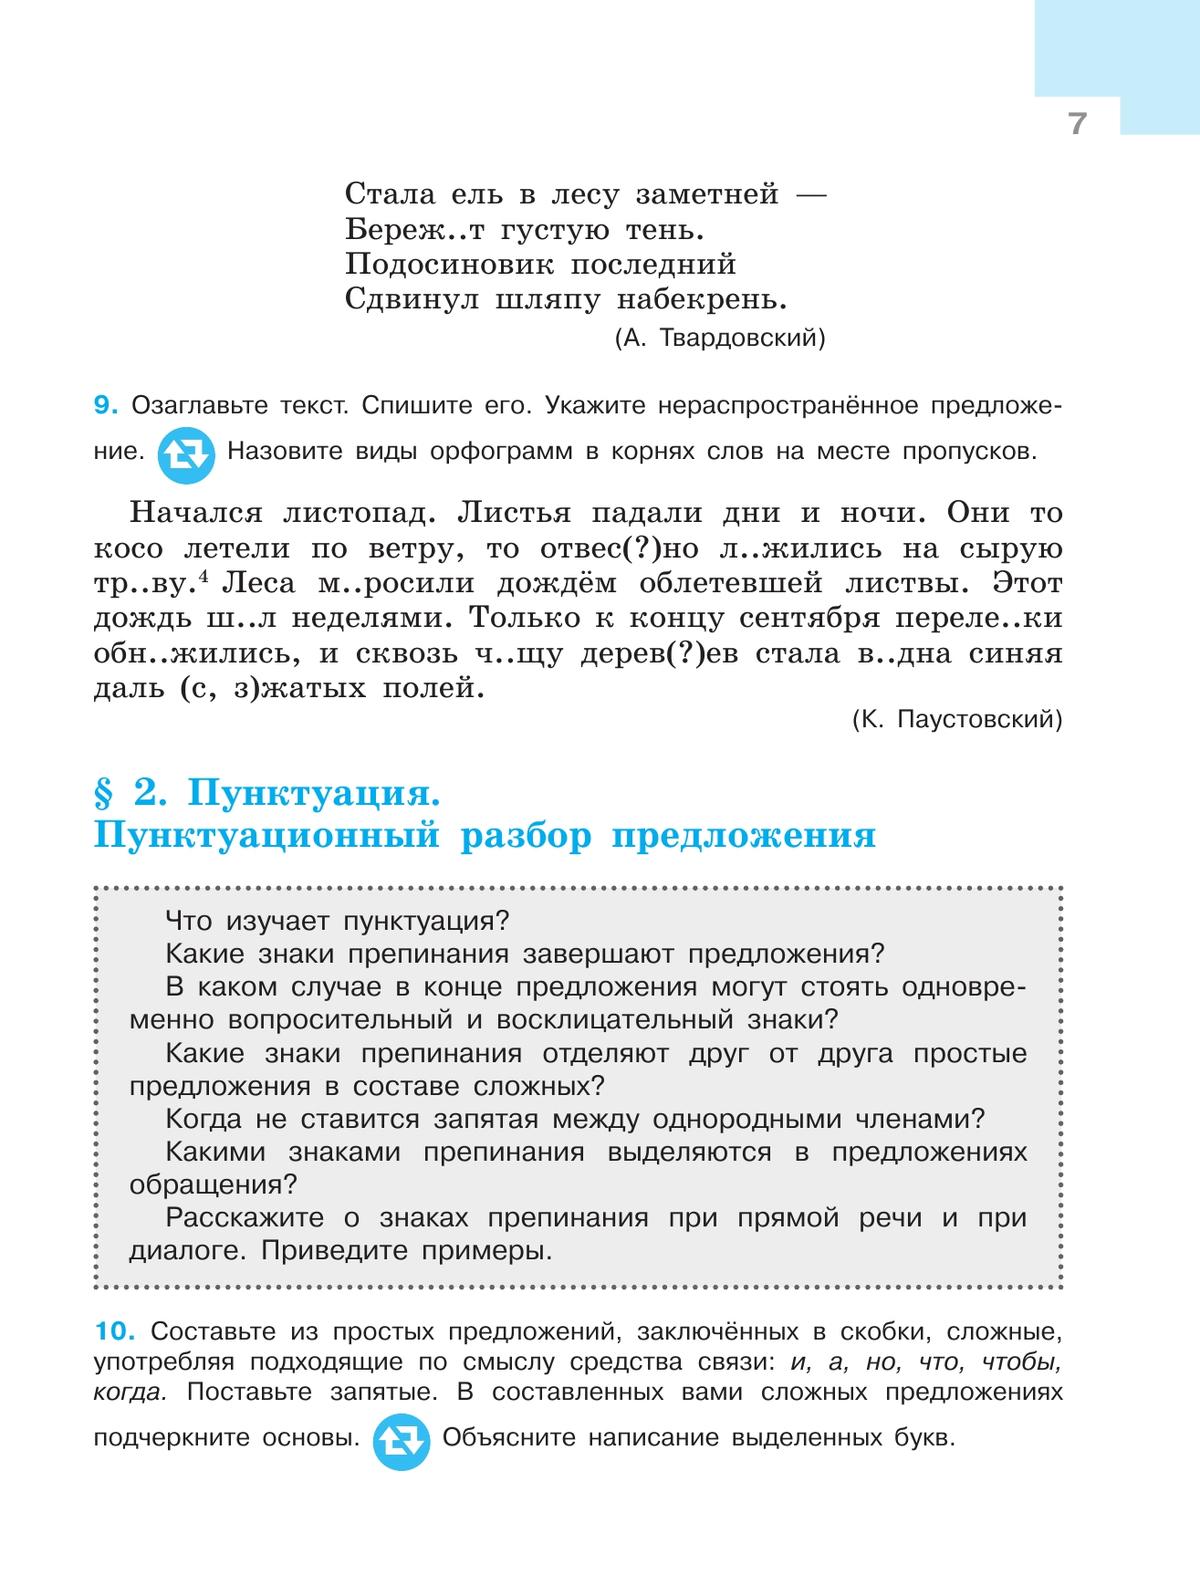 Русский язык. 7 класс. Учебник. В 2 ч. Часть 1 8